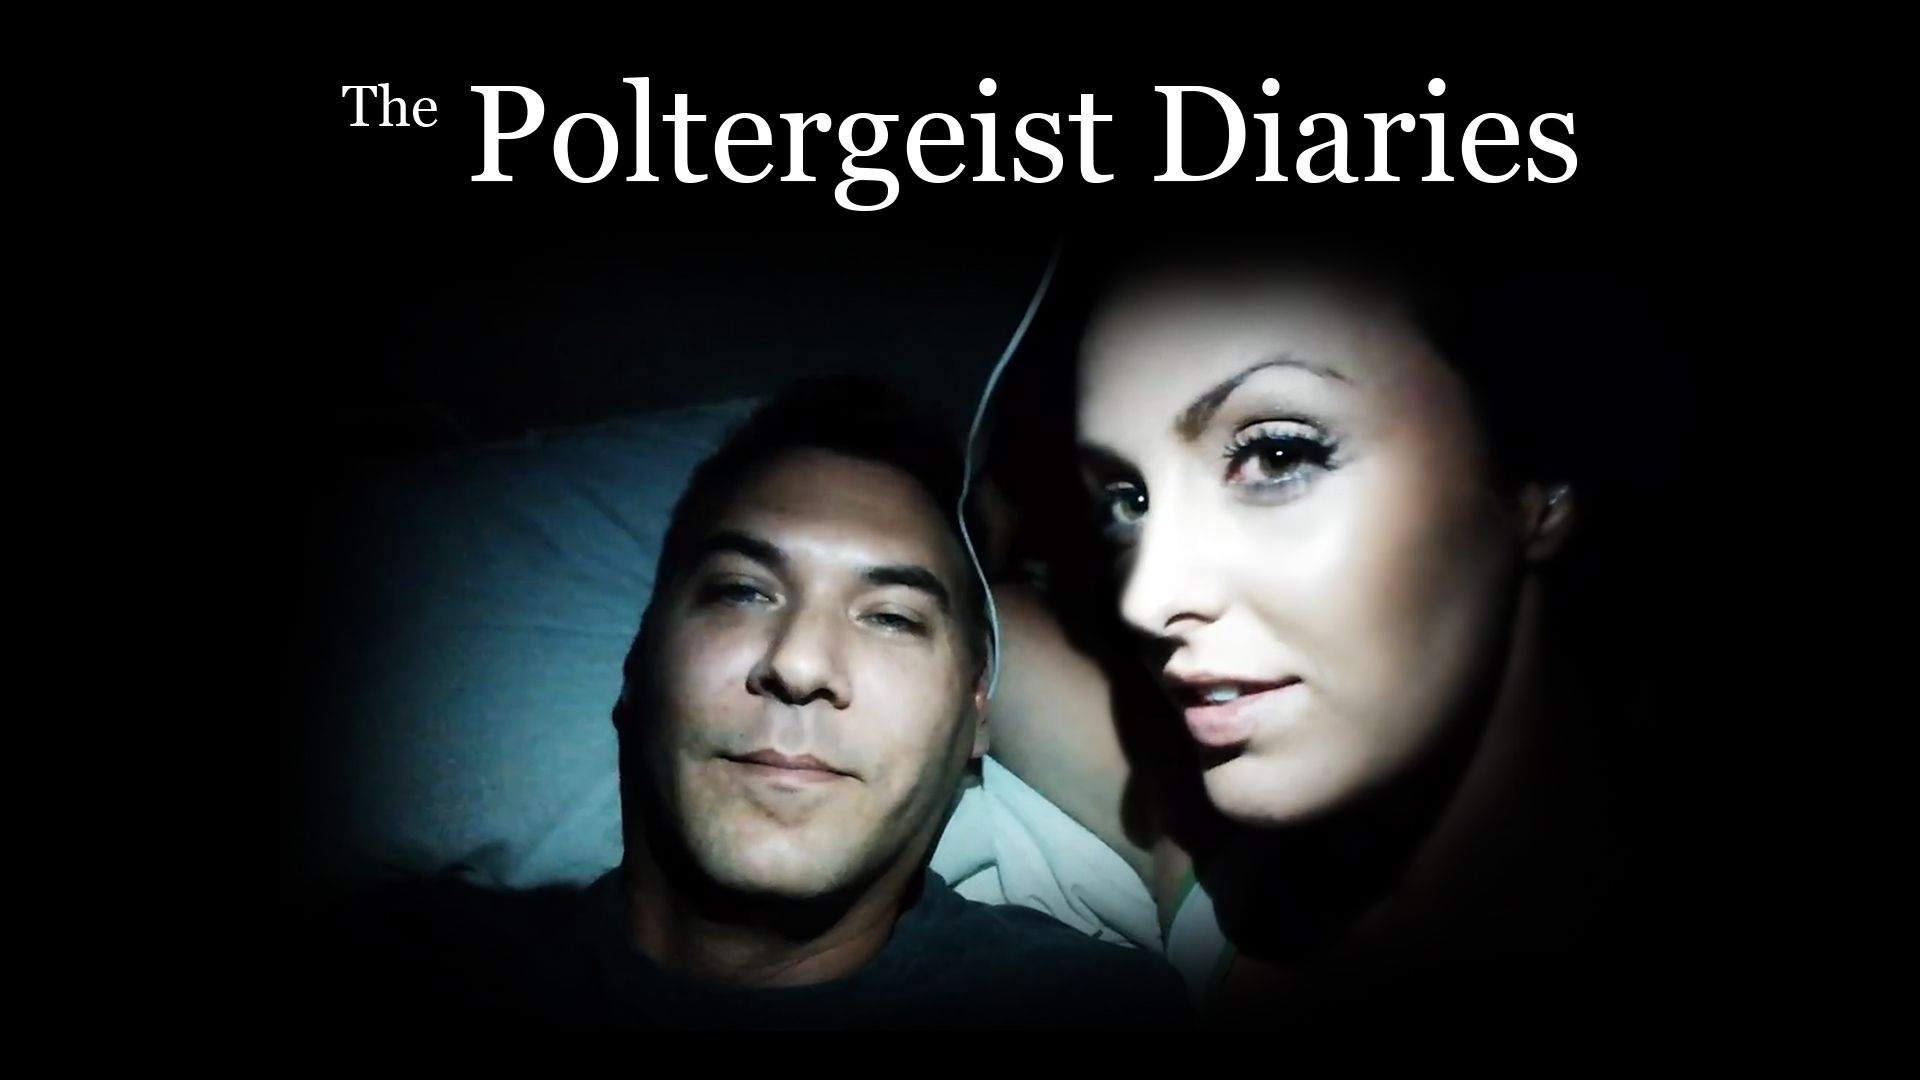 The Poltergeist Diaries Backdrop